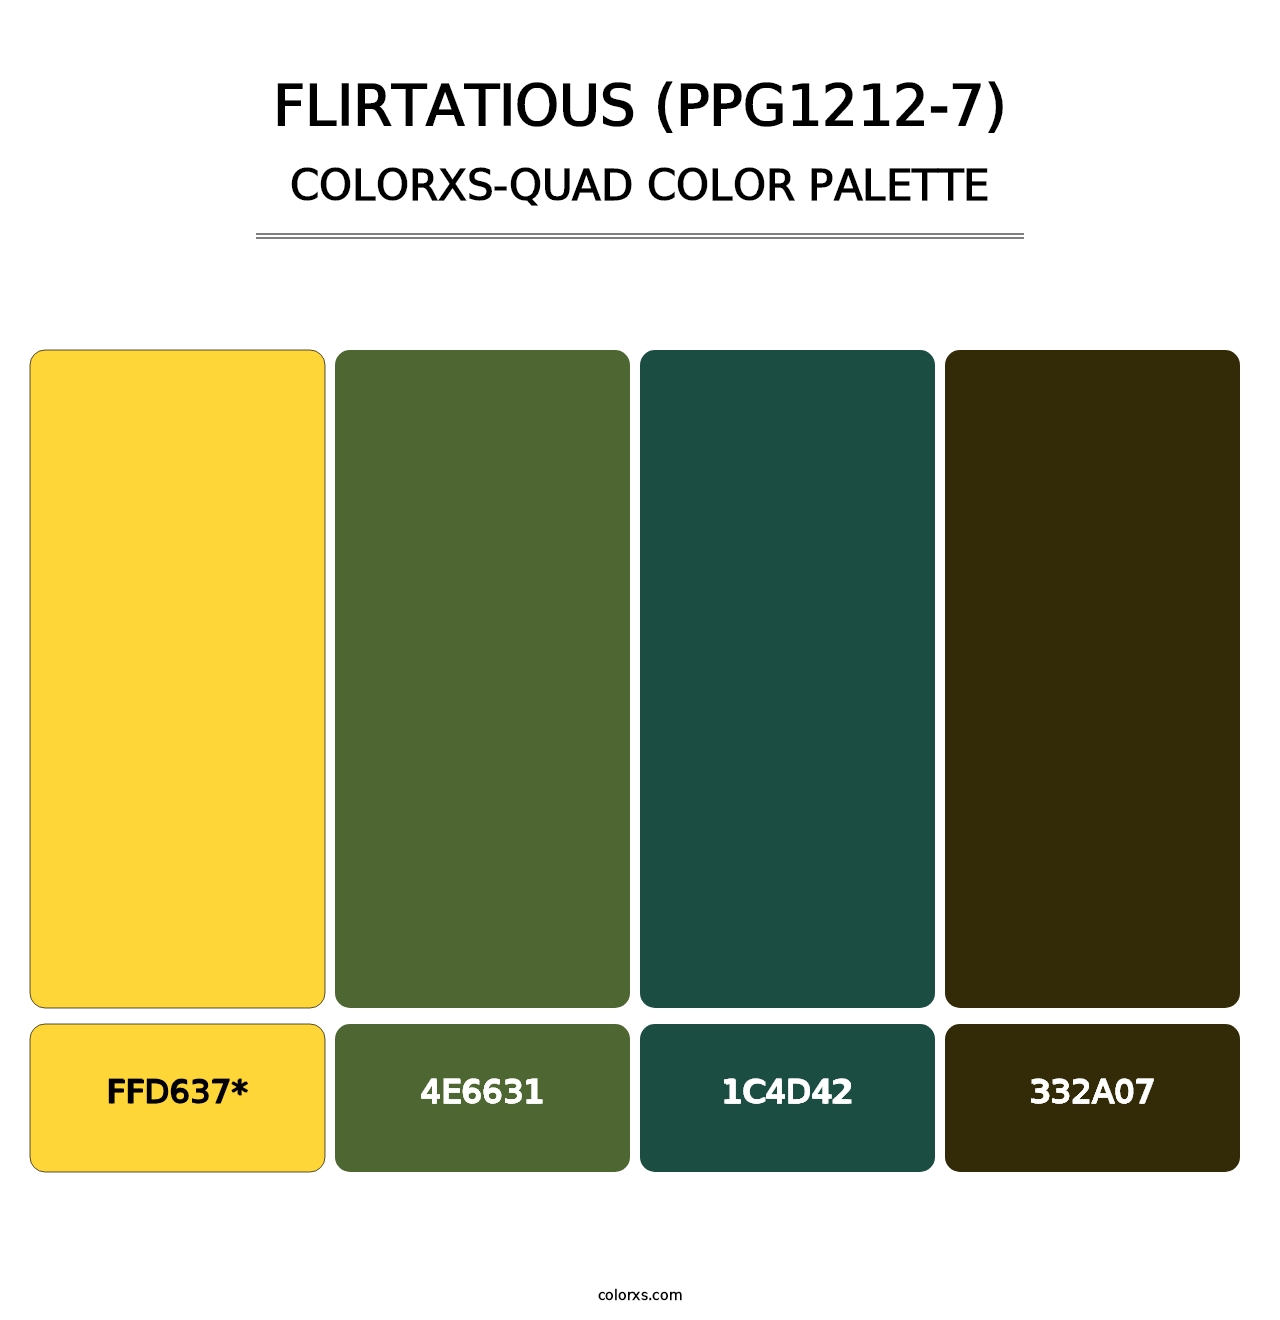 Flirtatious (PPG1212-7) - Colorxs Quad Palette